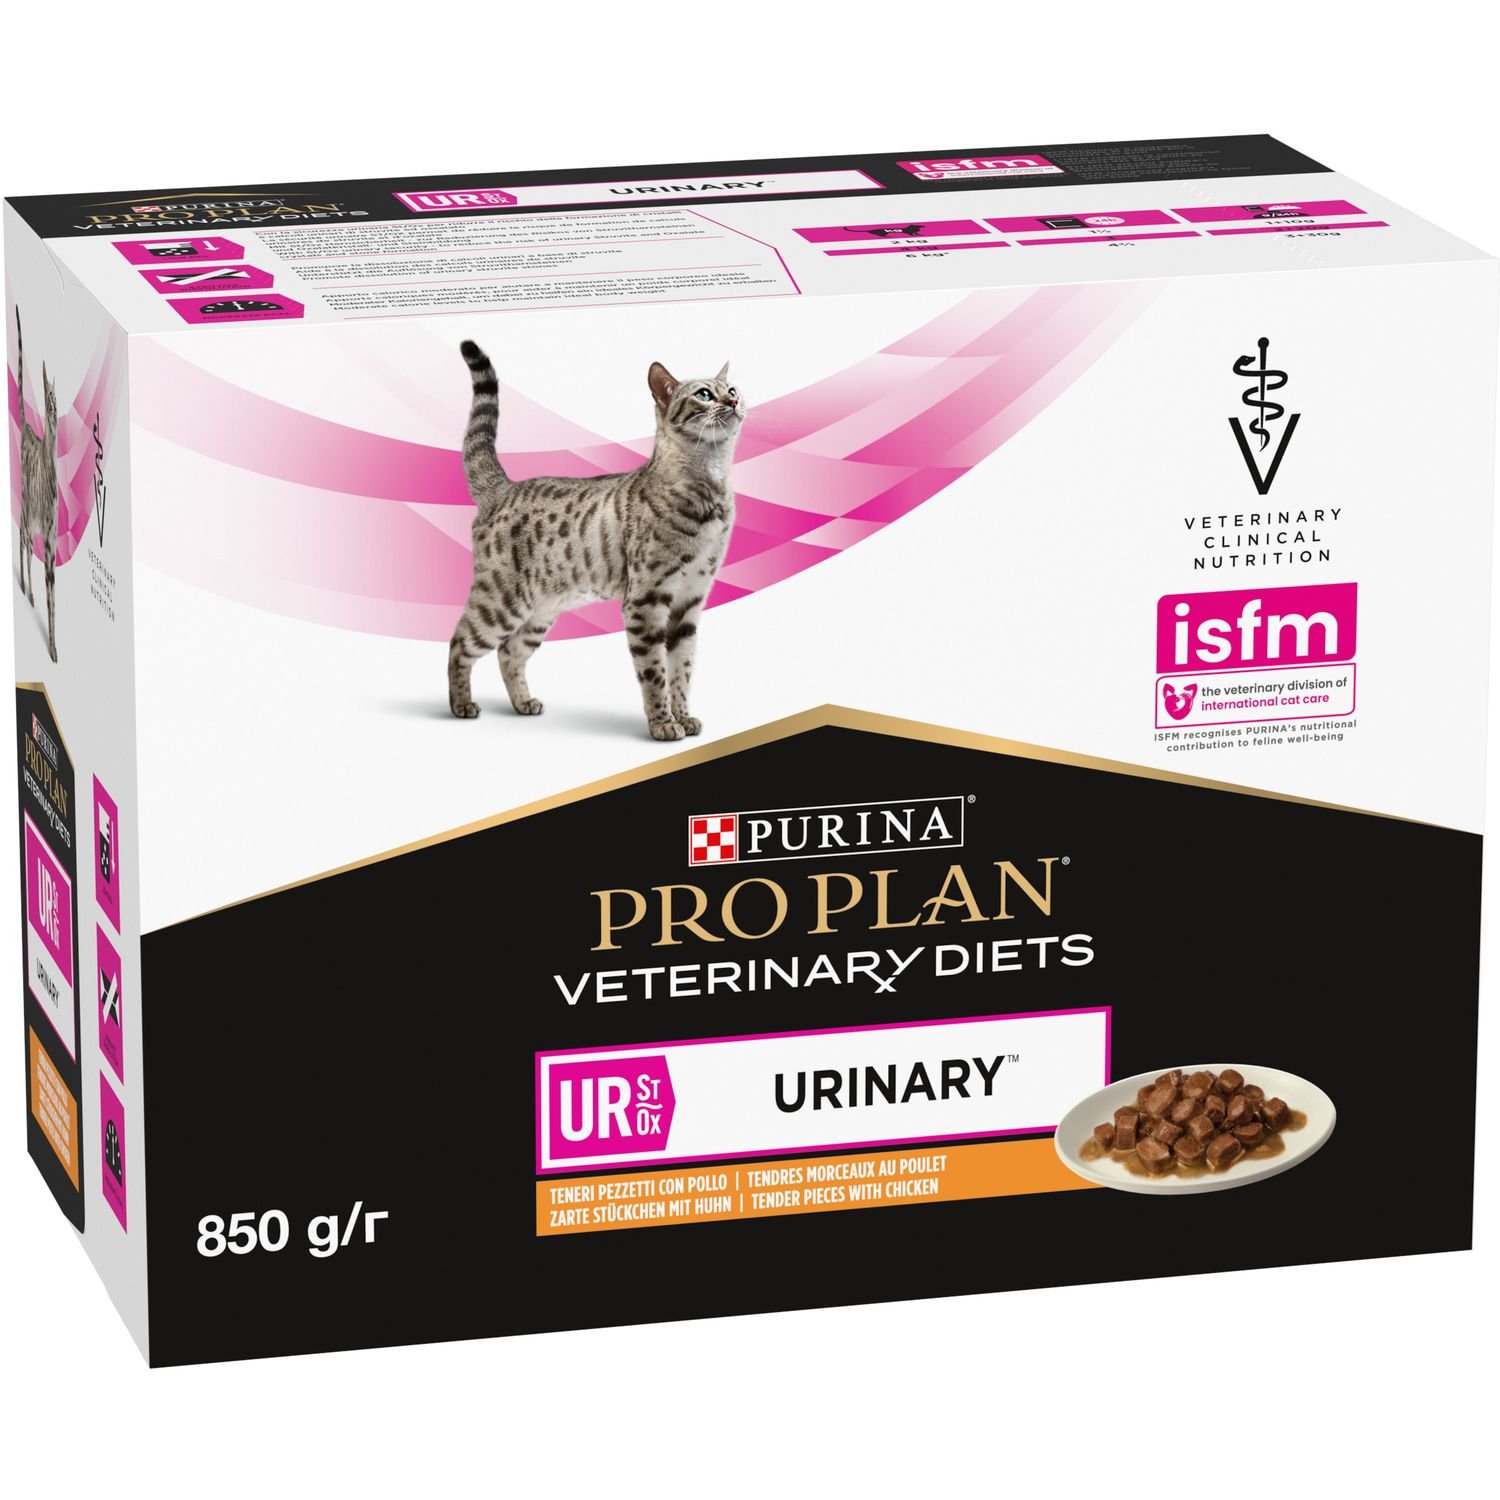 Влажный диетический корм для взрослых кошек Purina Pro Plan Veterinary Diets UR ST/OX Urinary для растворения и снижения образования струвитных камней с курицей 850 г (10 шт. по 85 г) (12308818) - фото 3